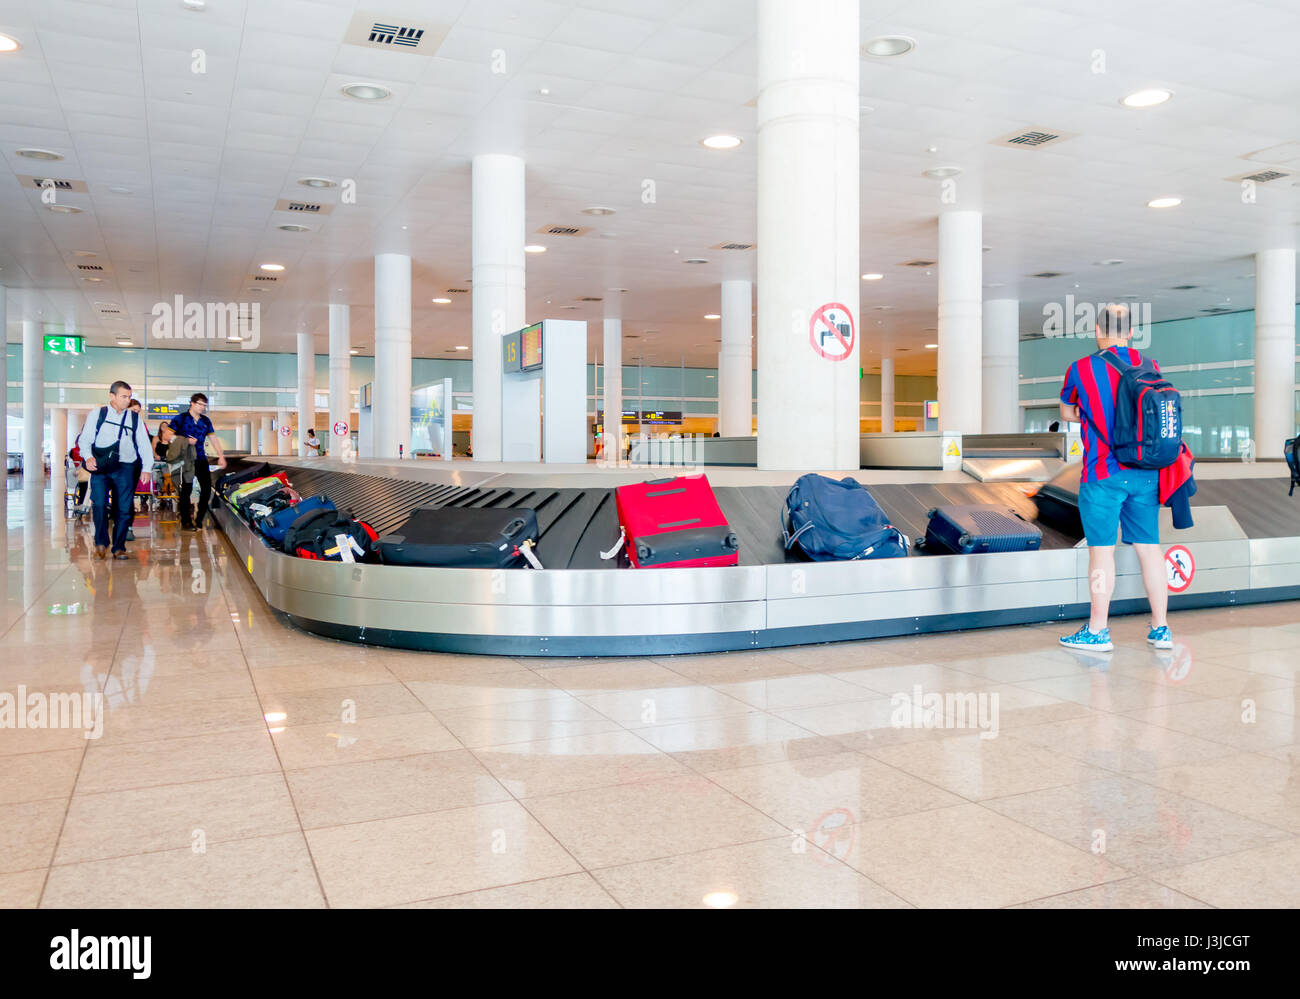 Barcelone, Espagne - 8 août, 2015 : tapis roulant pour bagages des arrivées avec des valises et des personnes autour d'attente à l'intérieur grand hall de couleur vive au sein d'air Banque D'Images